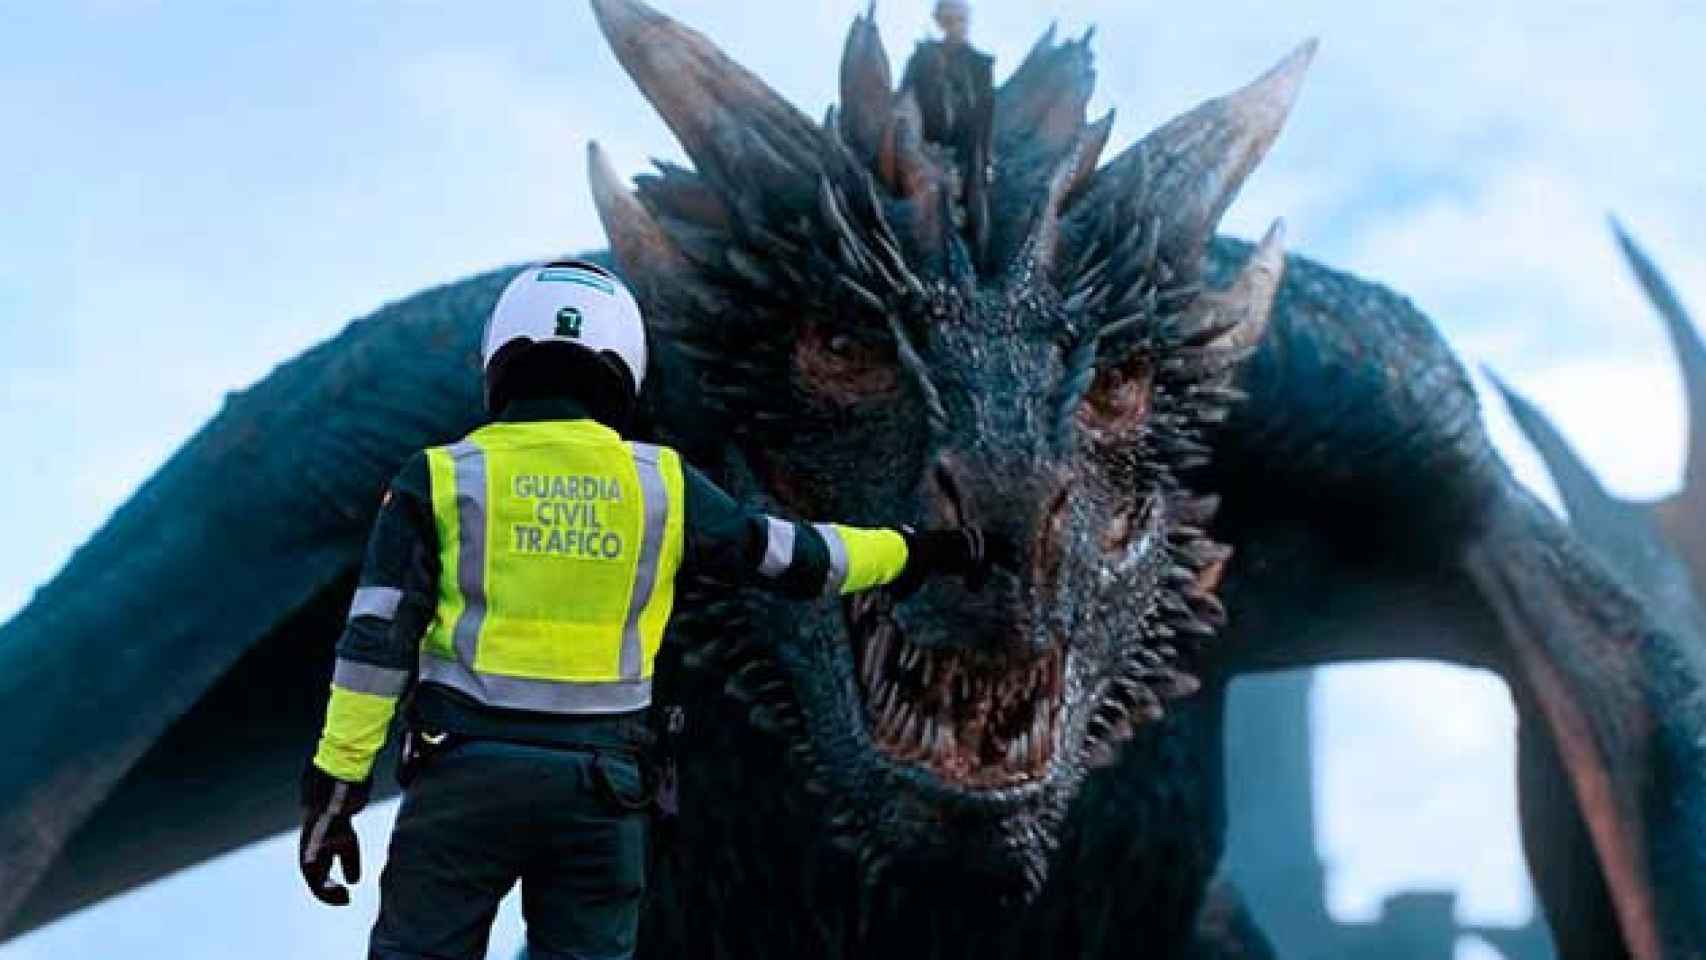 Un agente de la Guardia Civil da el alto al dragón de Daenerys / CG